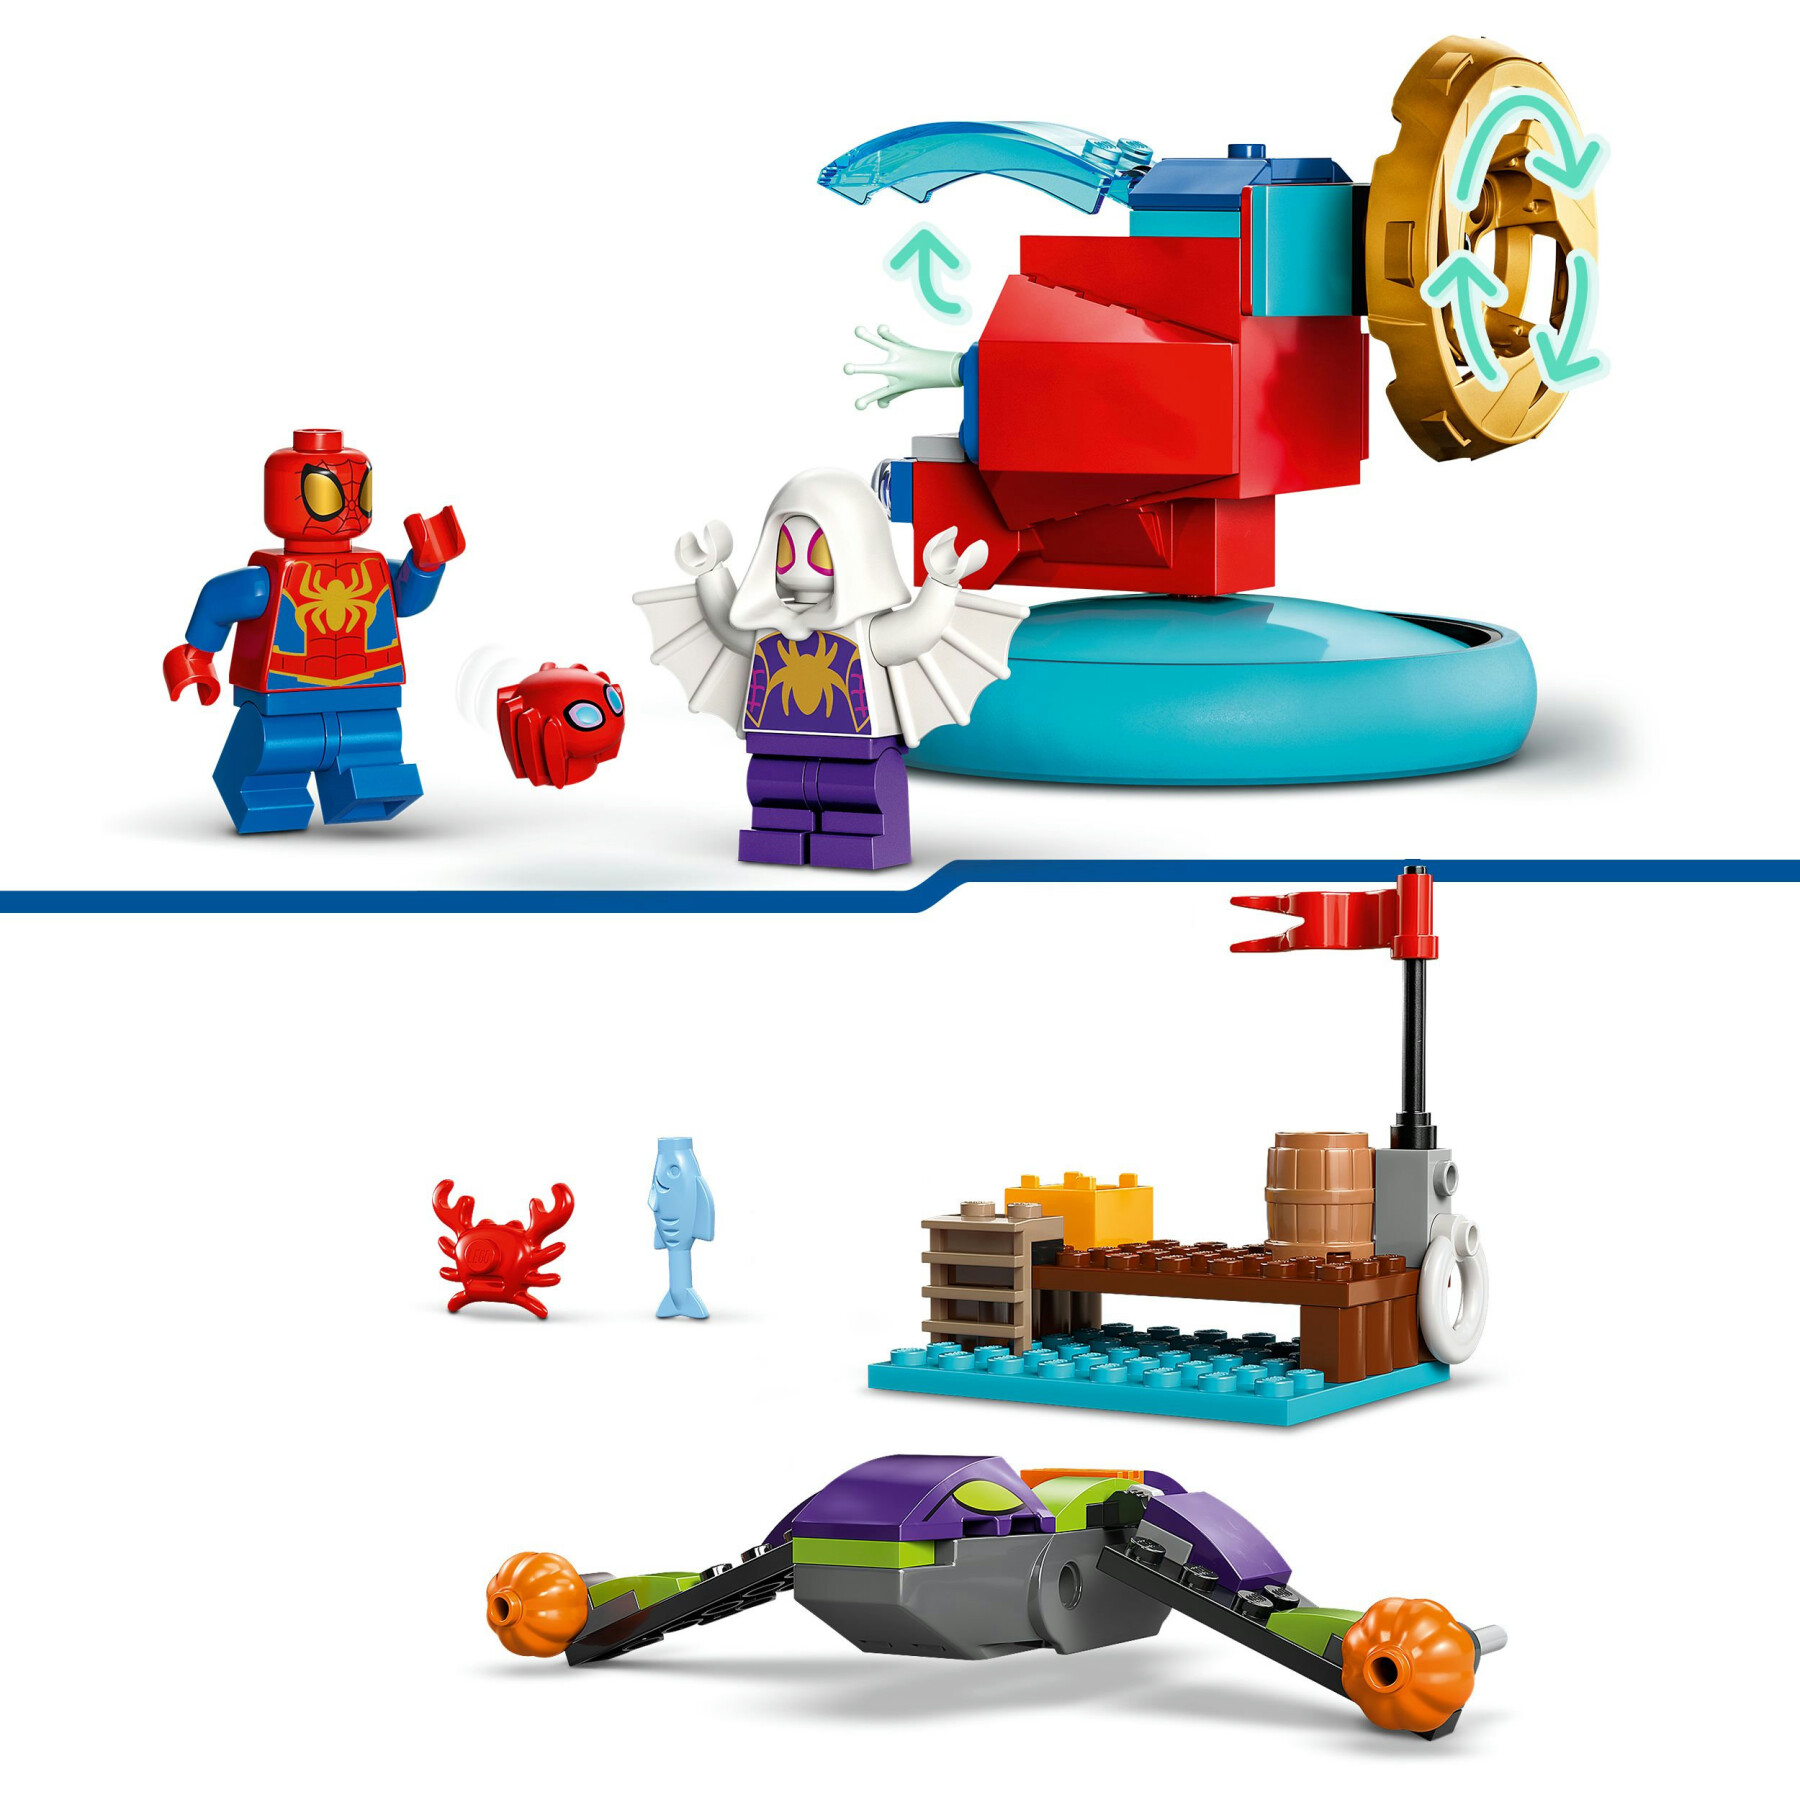 Lego spidey e i suoi fantastici amici 10793 spider-man vs. goblin, giochi bambini 4+ con veicoli giocattolo e 3 supereroi - LEGO SPIDERMAN, SPIDEY